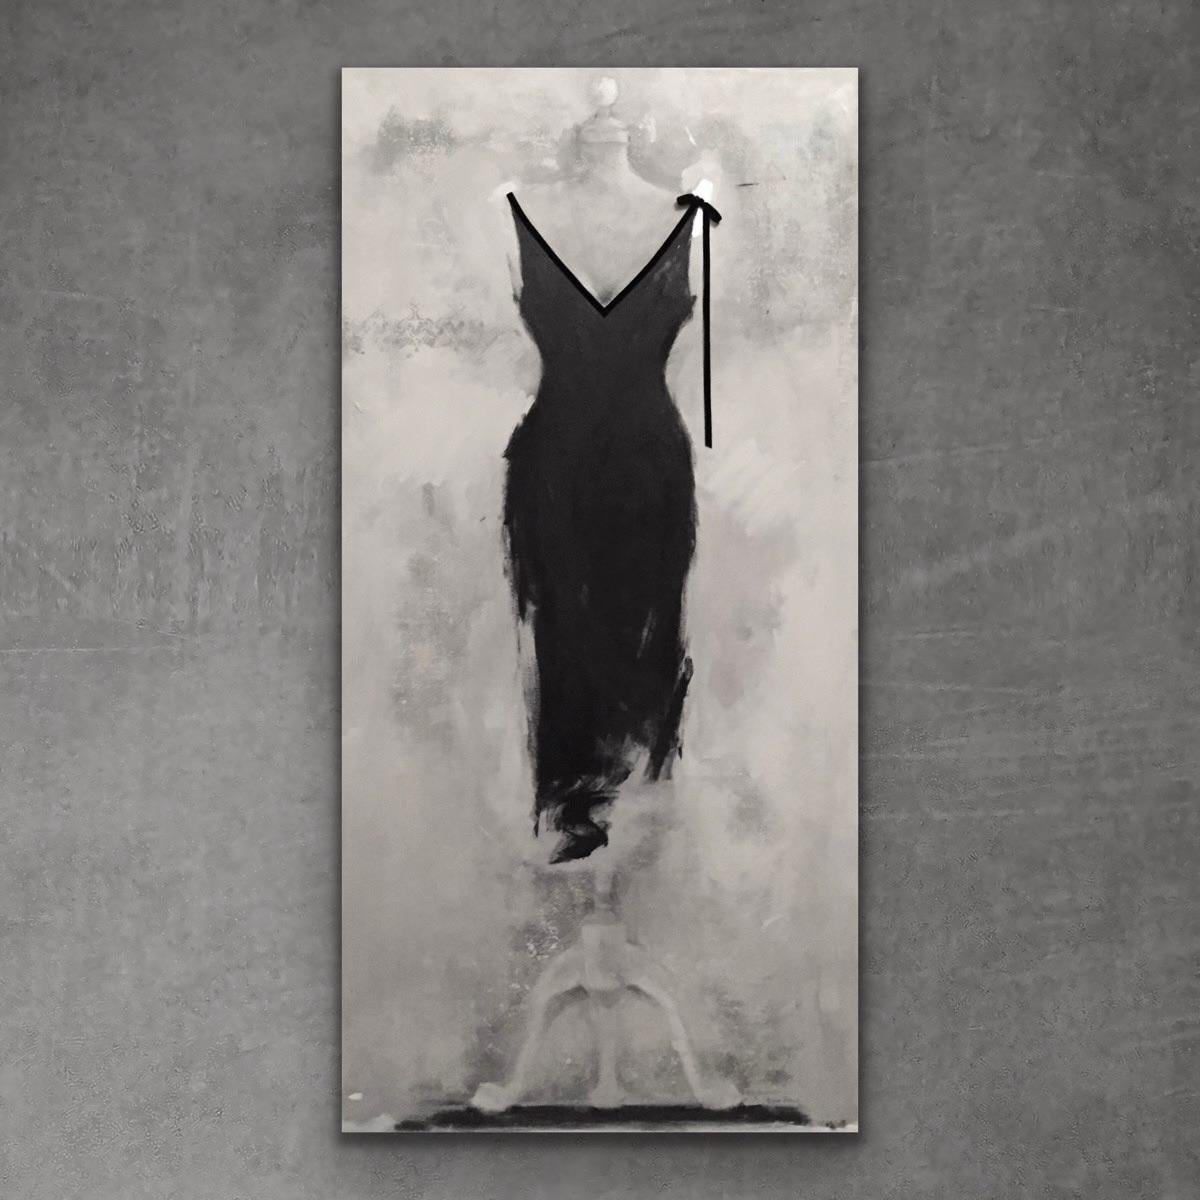 Schwarz ist schwarz 60"x30"", Schwarzes Kleid, Stillleben – Art von Andrea Stajan-Ferkul